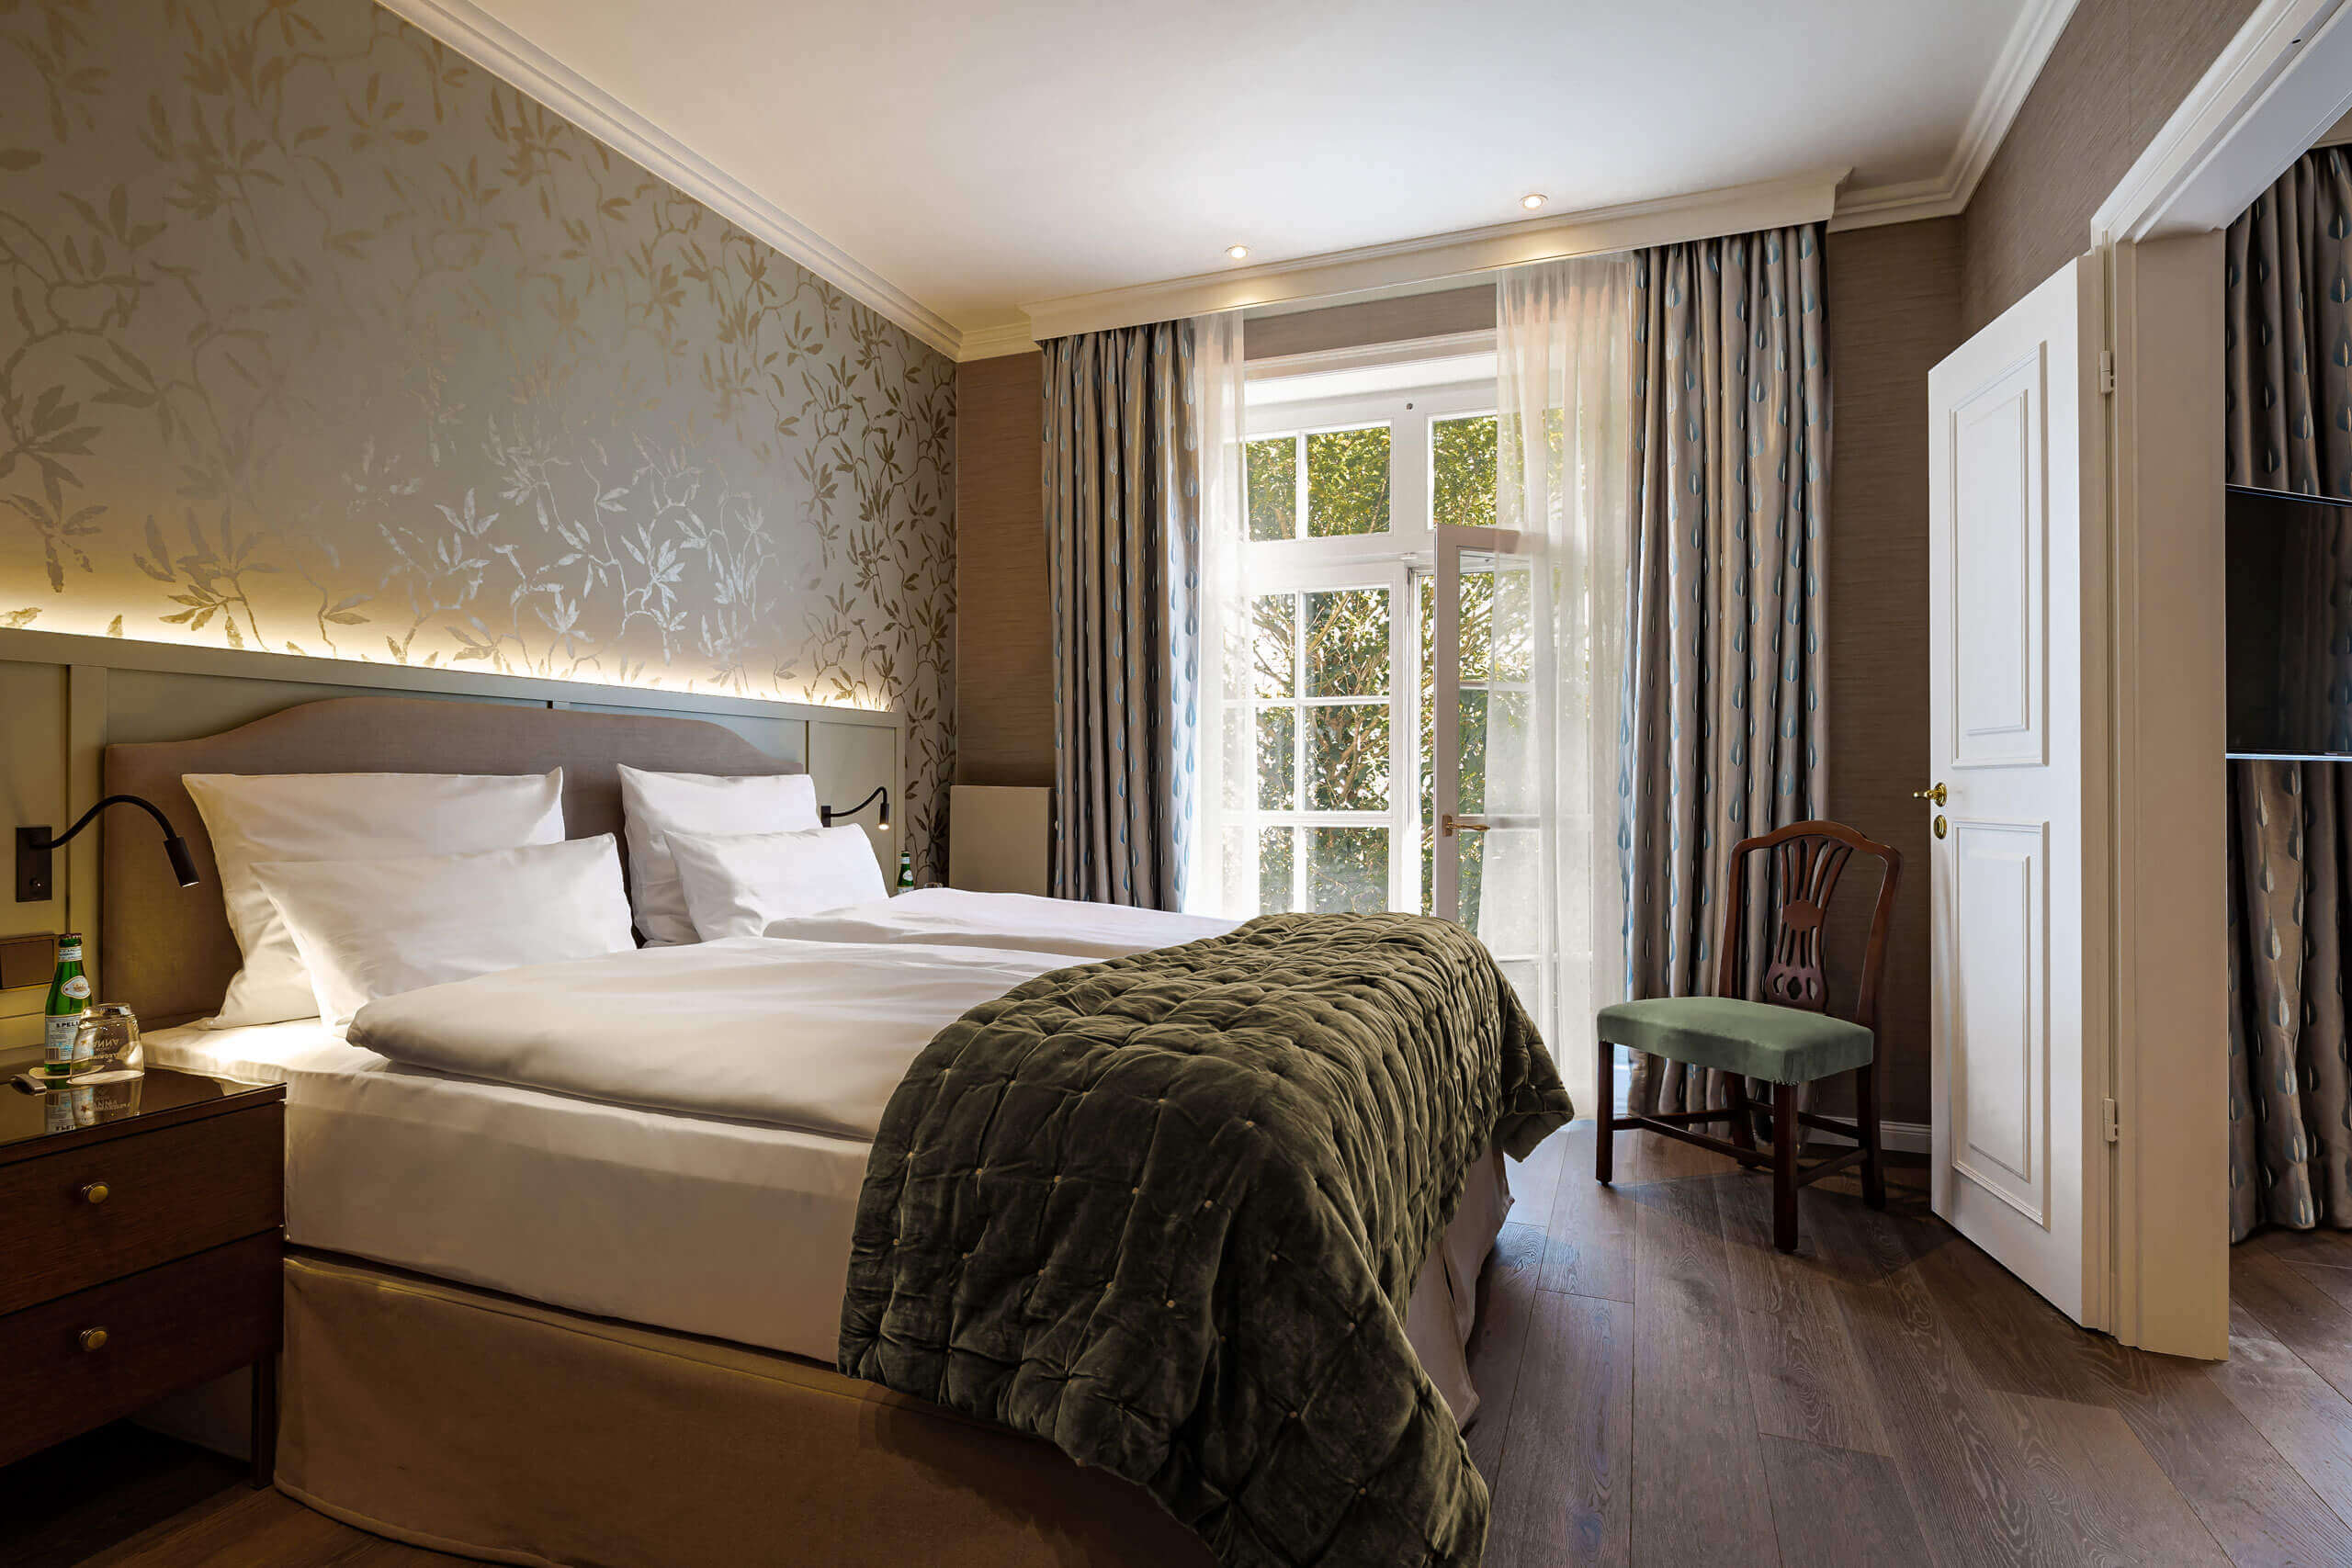 Ein Bett mit grüner Decke in einem Raum mit Tür und Fenstern. Luxuriös in Westerland, 45 Zimmer u